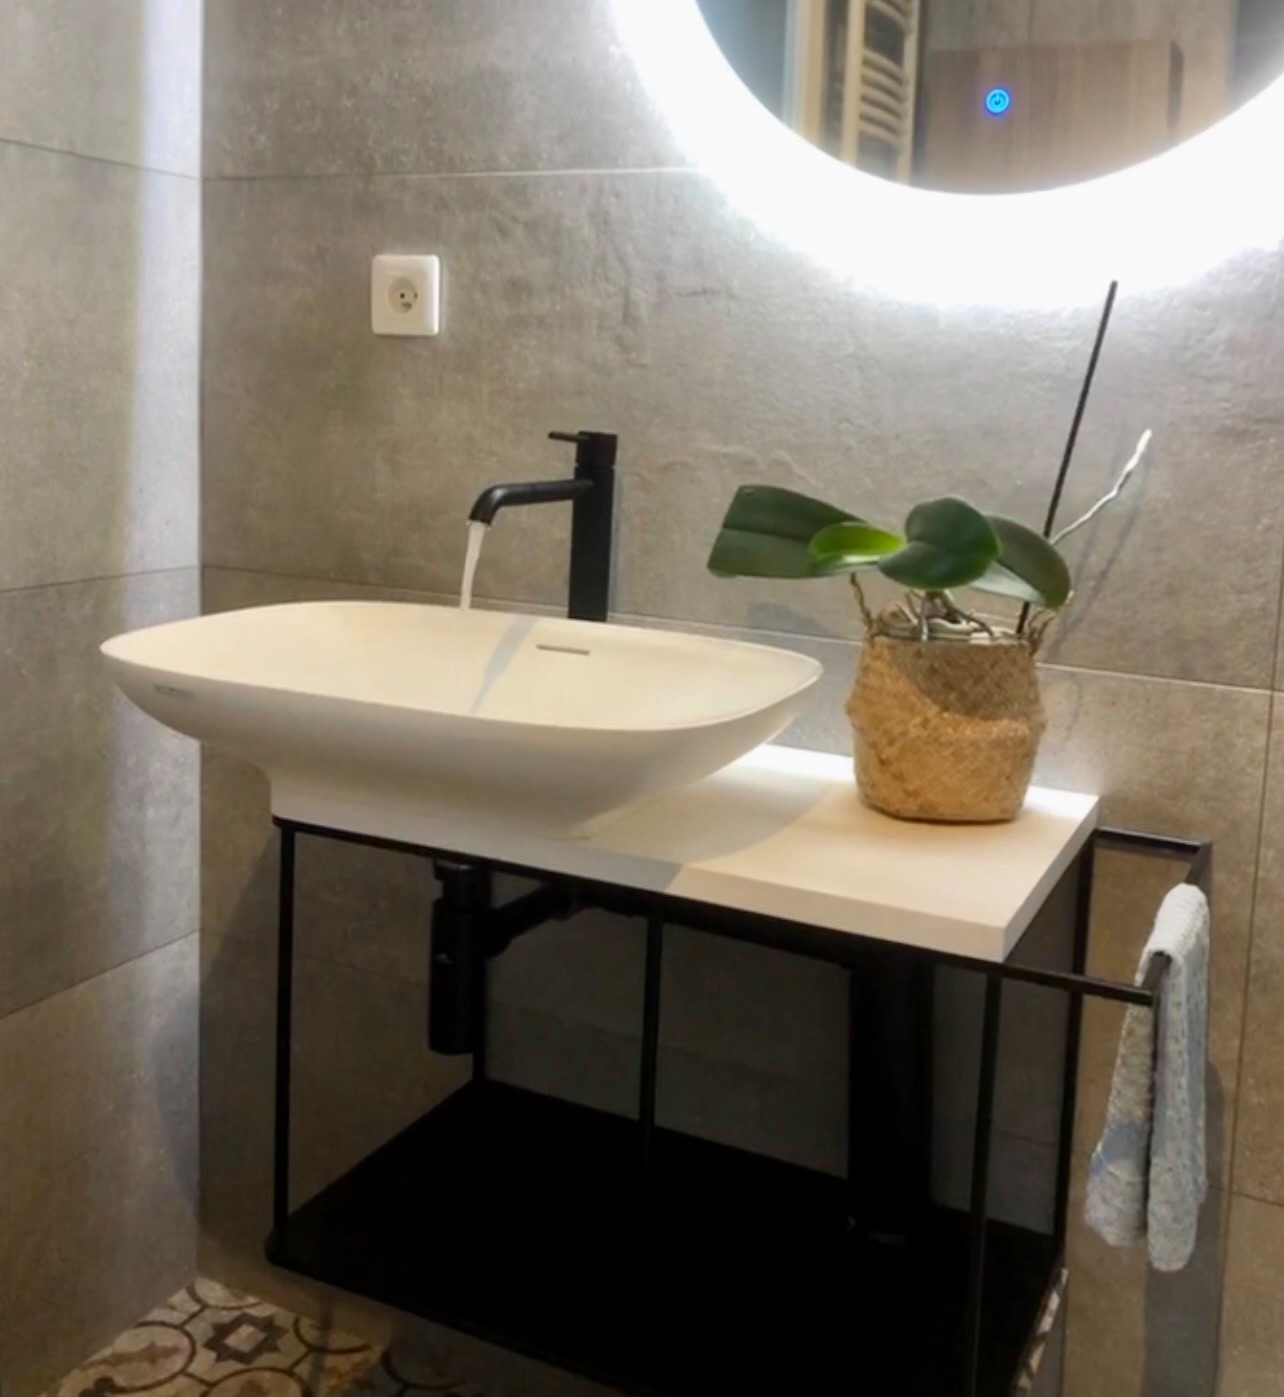 Une salle de bain au style moderne & cocooning